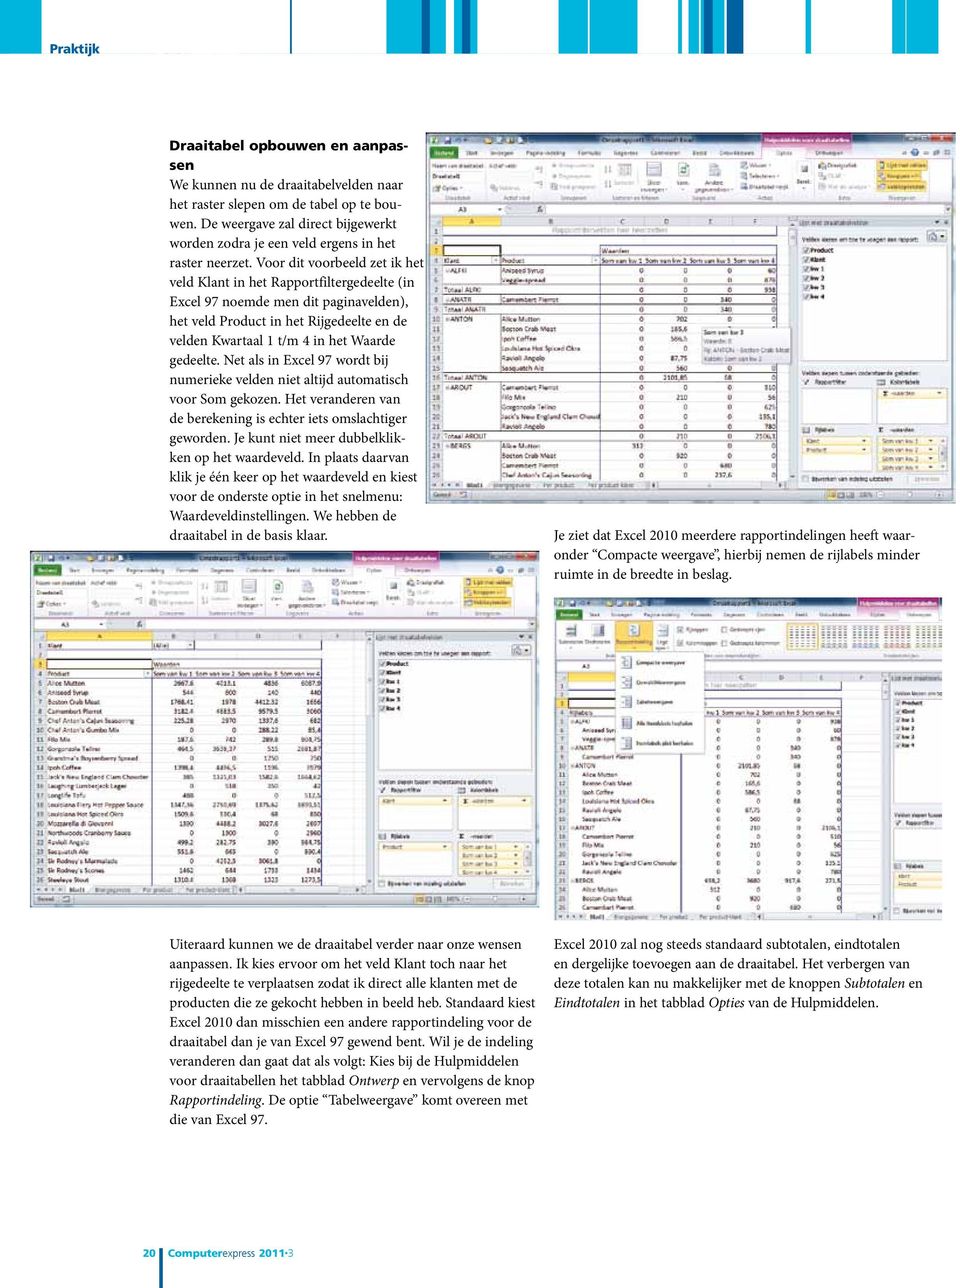 Voor dit voorbeeld zet ik het veld Klant in het Rapportfiltergedeelte (in Excel 97 noemde men dit paginavelden), het veld Product in het Rijgedeelte en de velden Kwartaal 1 t/m 4 in het Waarde